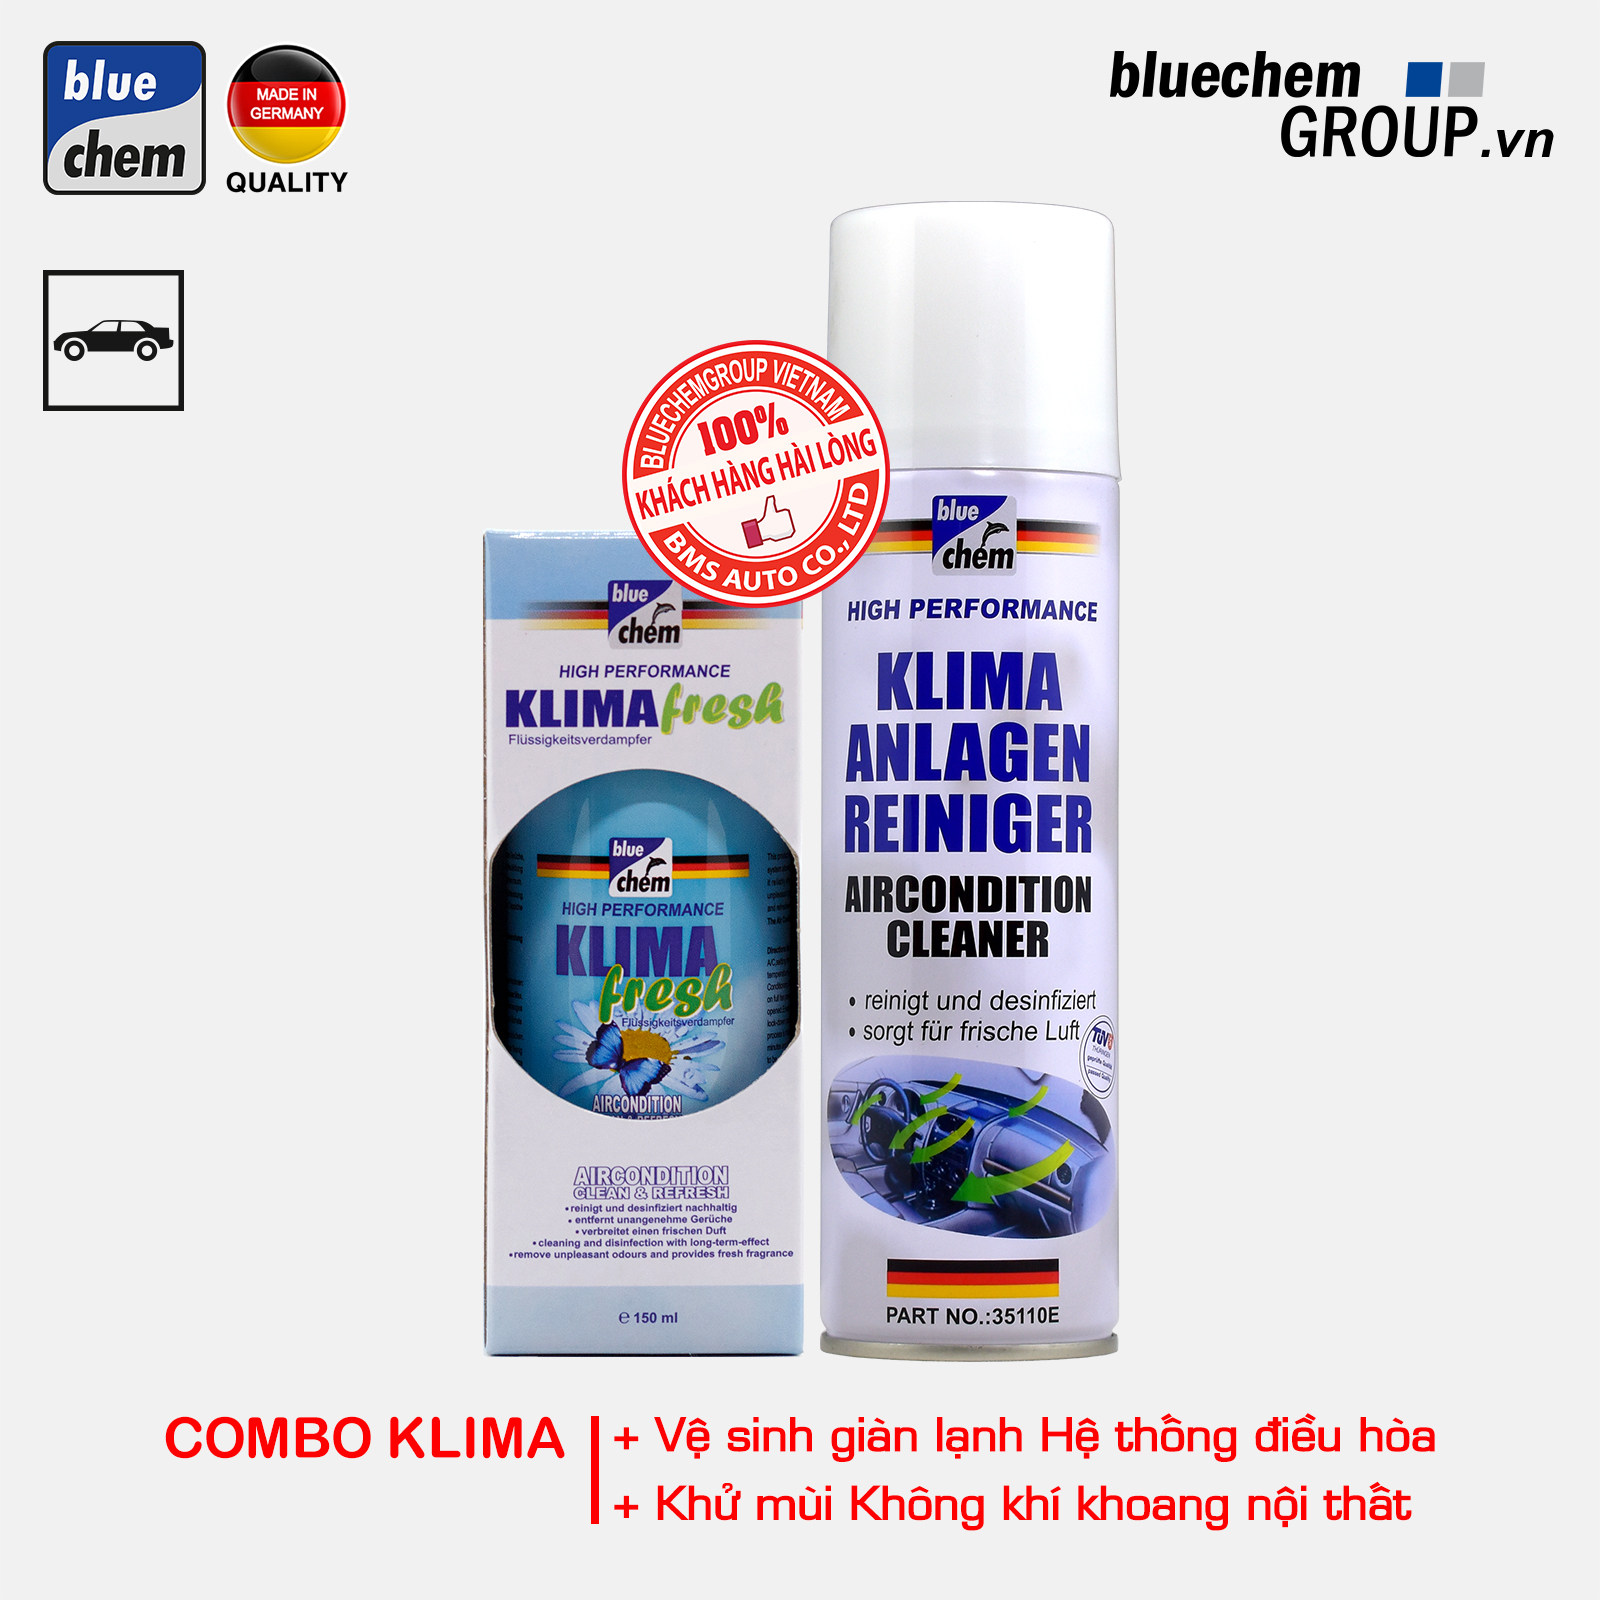 Combo bluechem Vệ sinh giàn lạnh và Khử mùi điều hòa (Combo Klima)